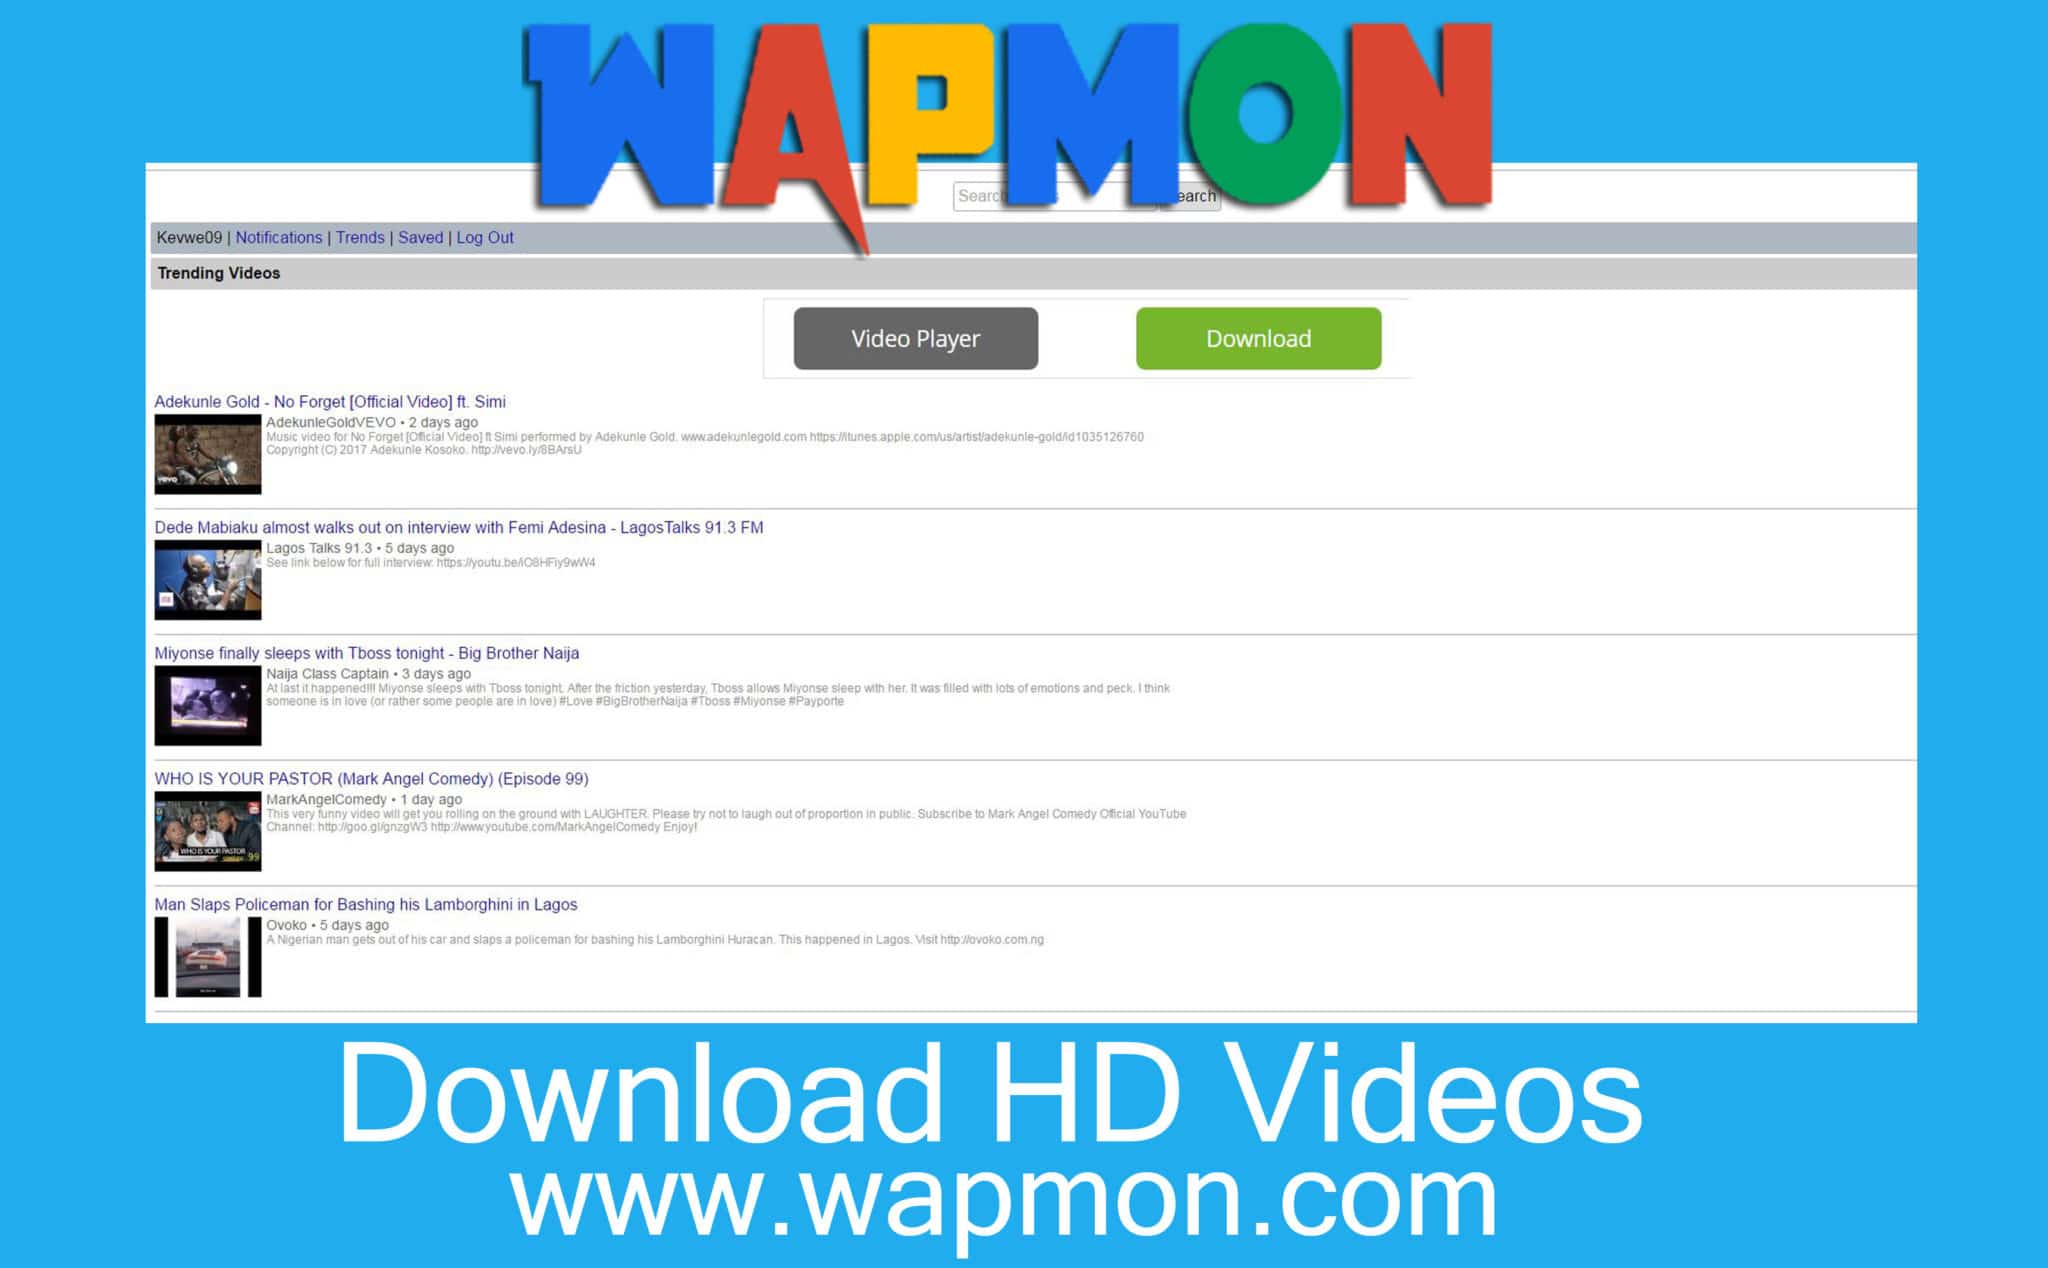 Wapmon – www.wapmon.com | Download HD Videos